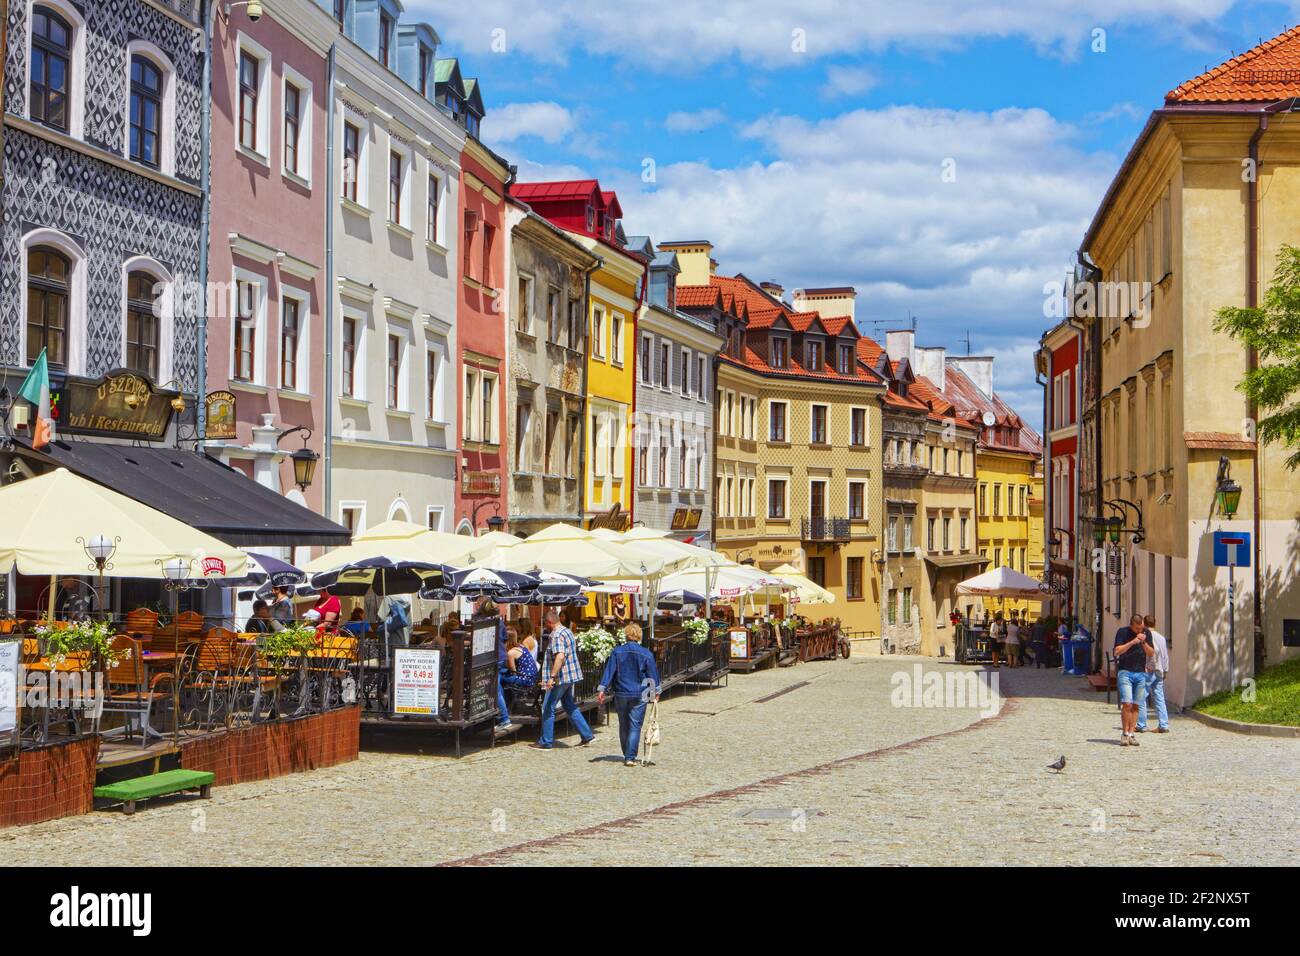 Poland, Lublin, Old Town, Lublin voivodeship. Stock Photo